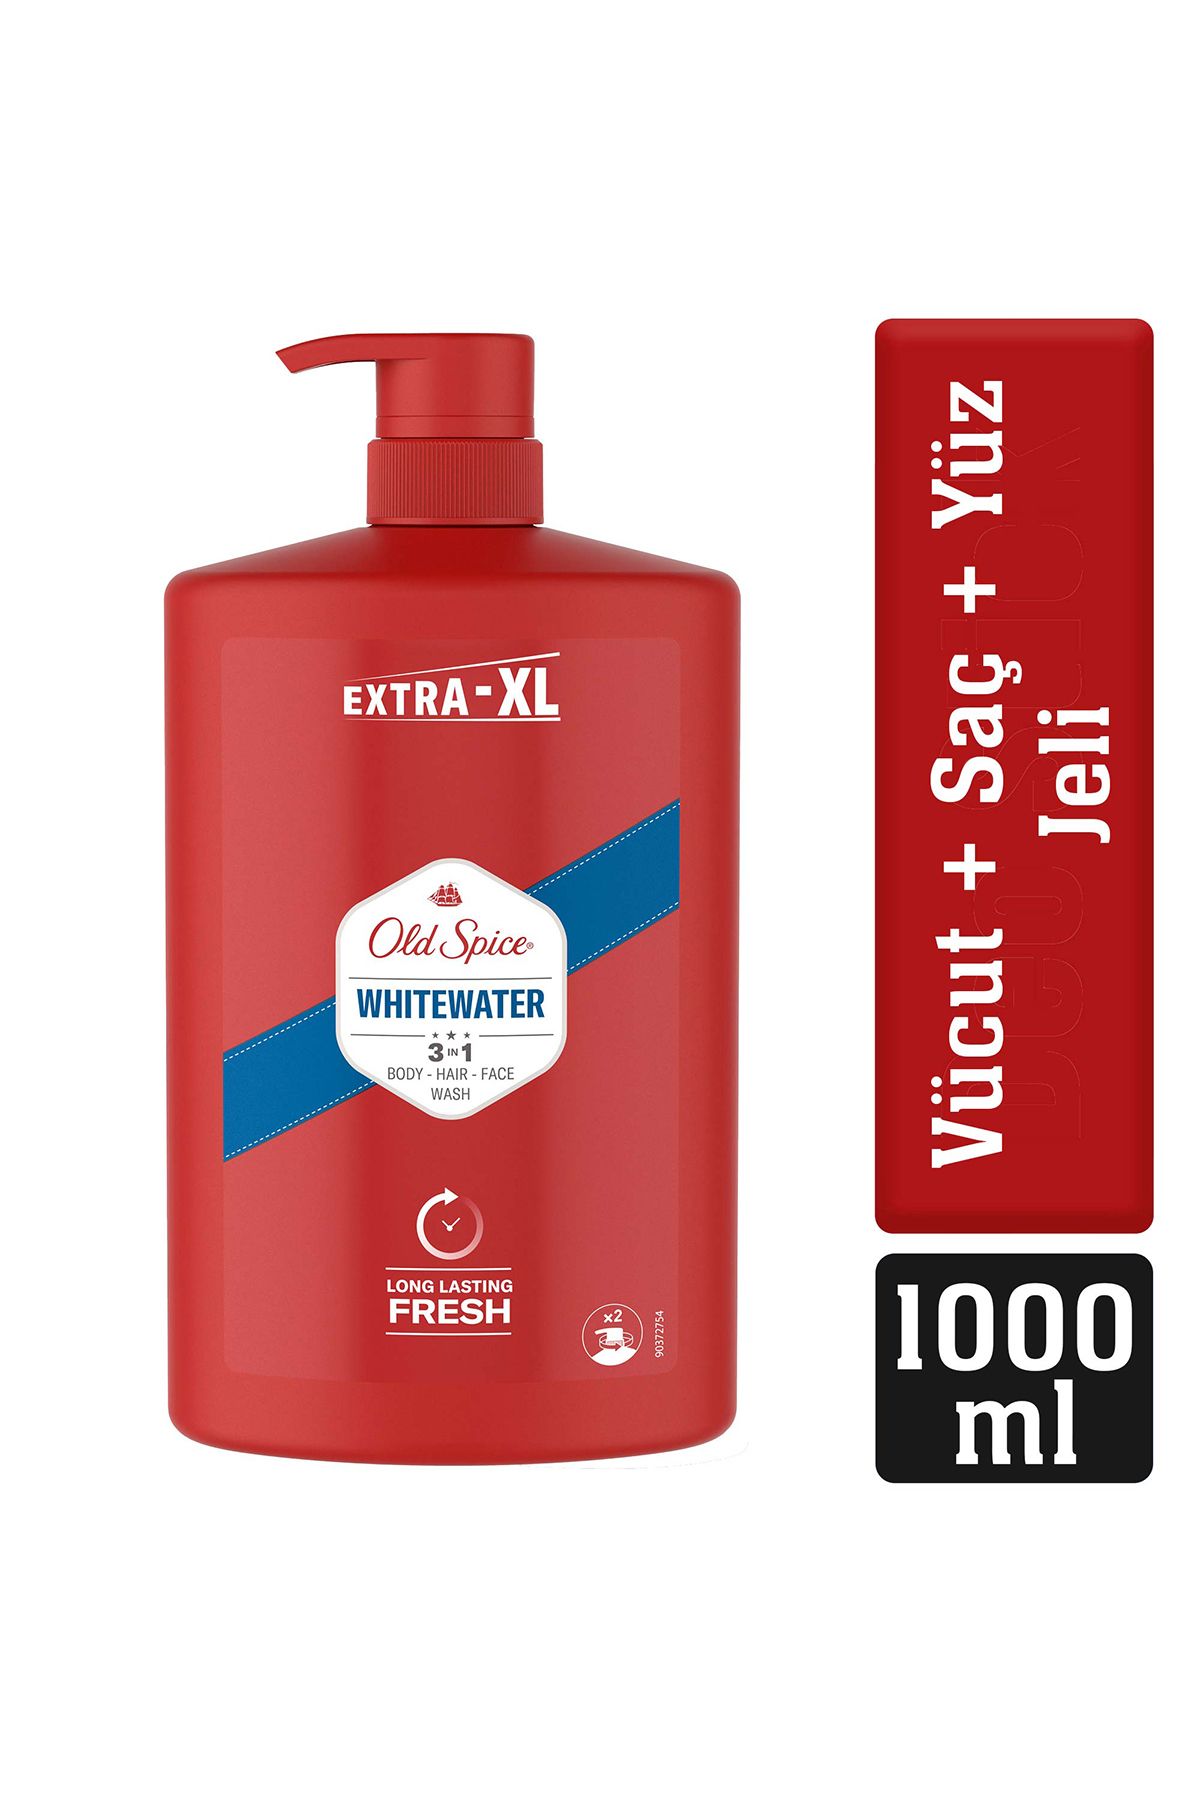 Old Spice Whitewater Erkekler İçin Duş Jeli ve Şampuan 1000 ml Ekstra-XL